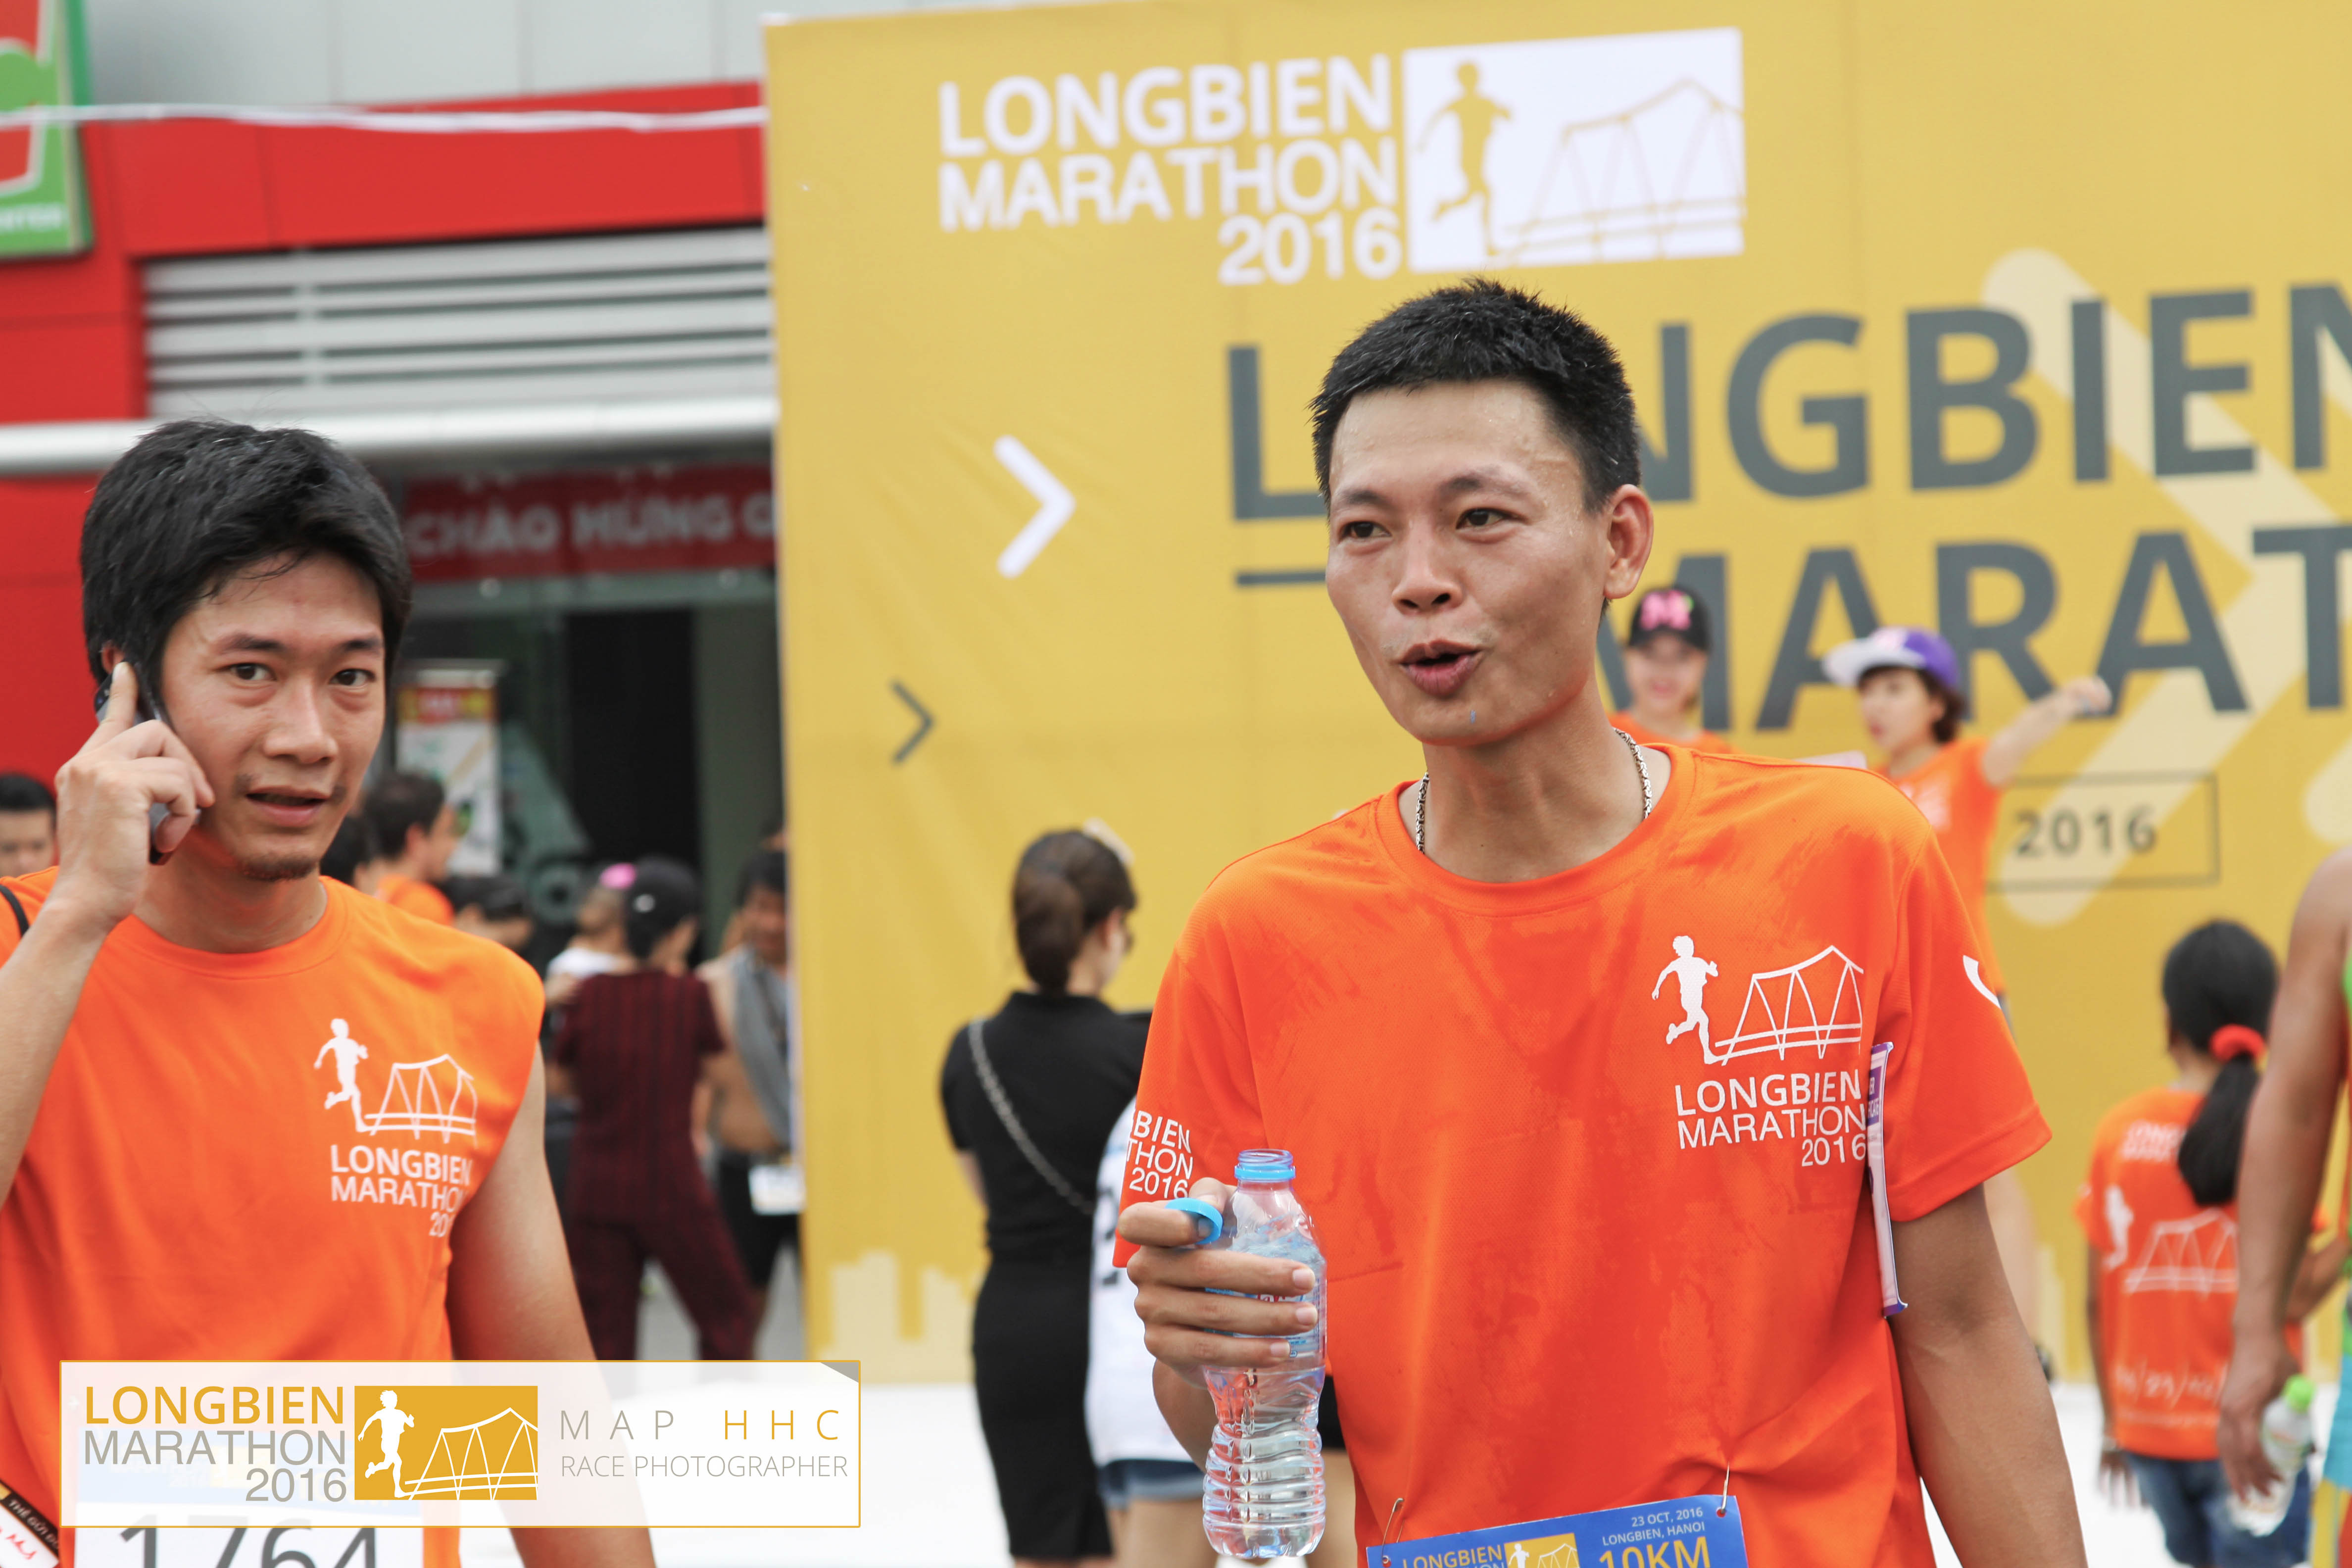 Collection 5 - Longbien Marathon 2016